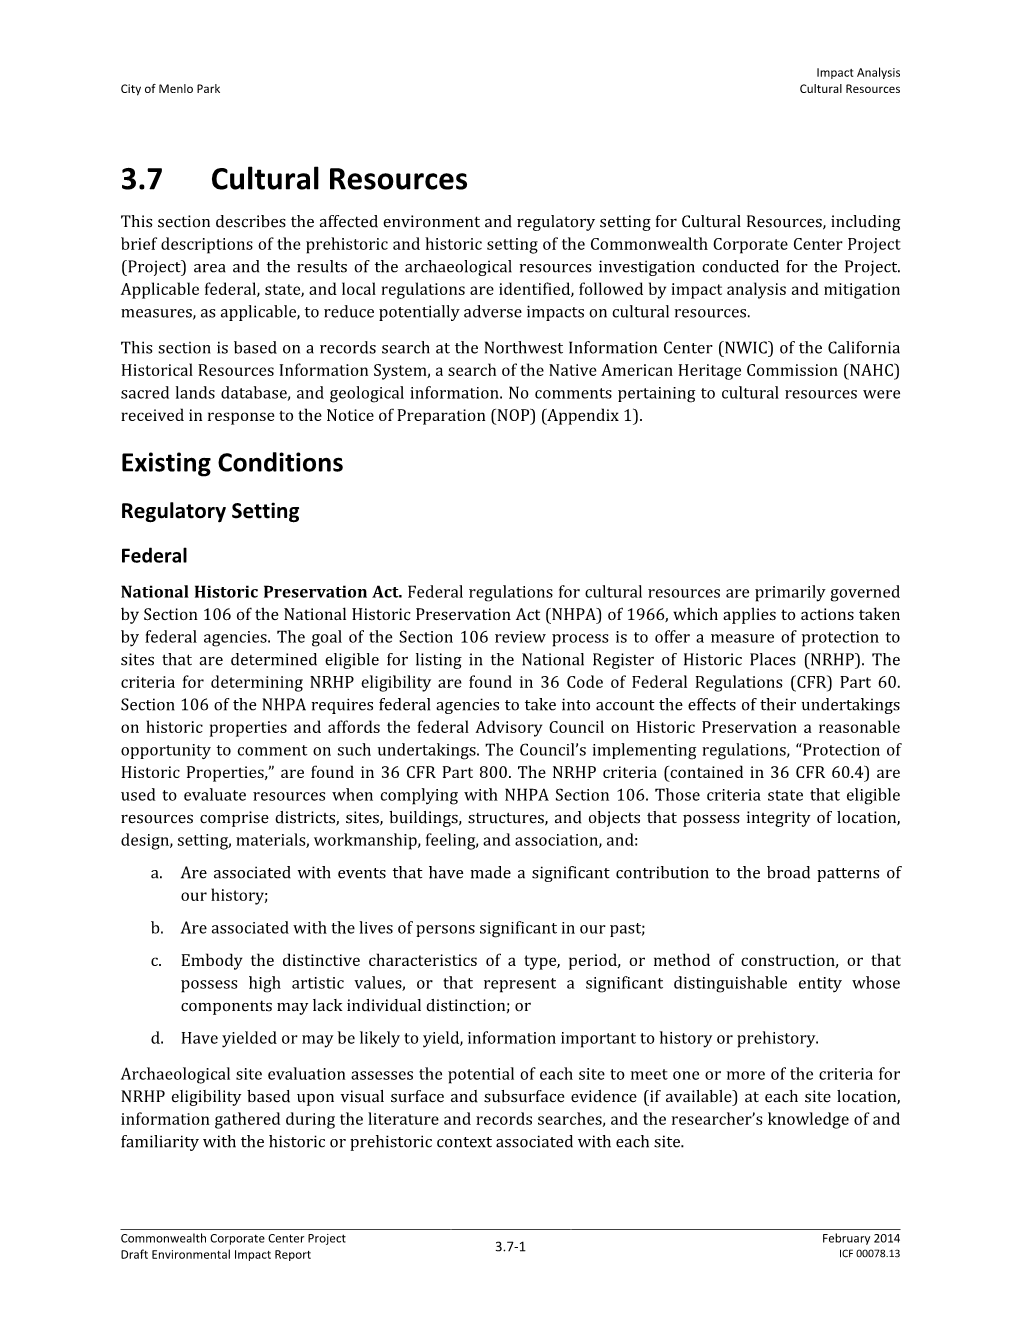 3.7 Cultural Resources